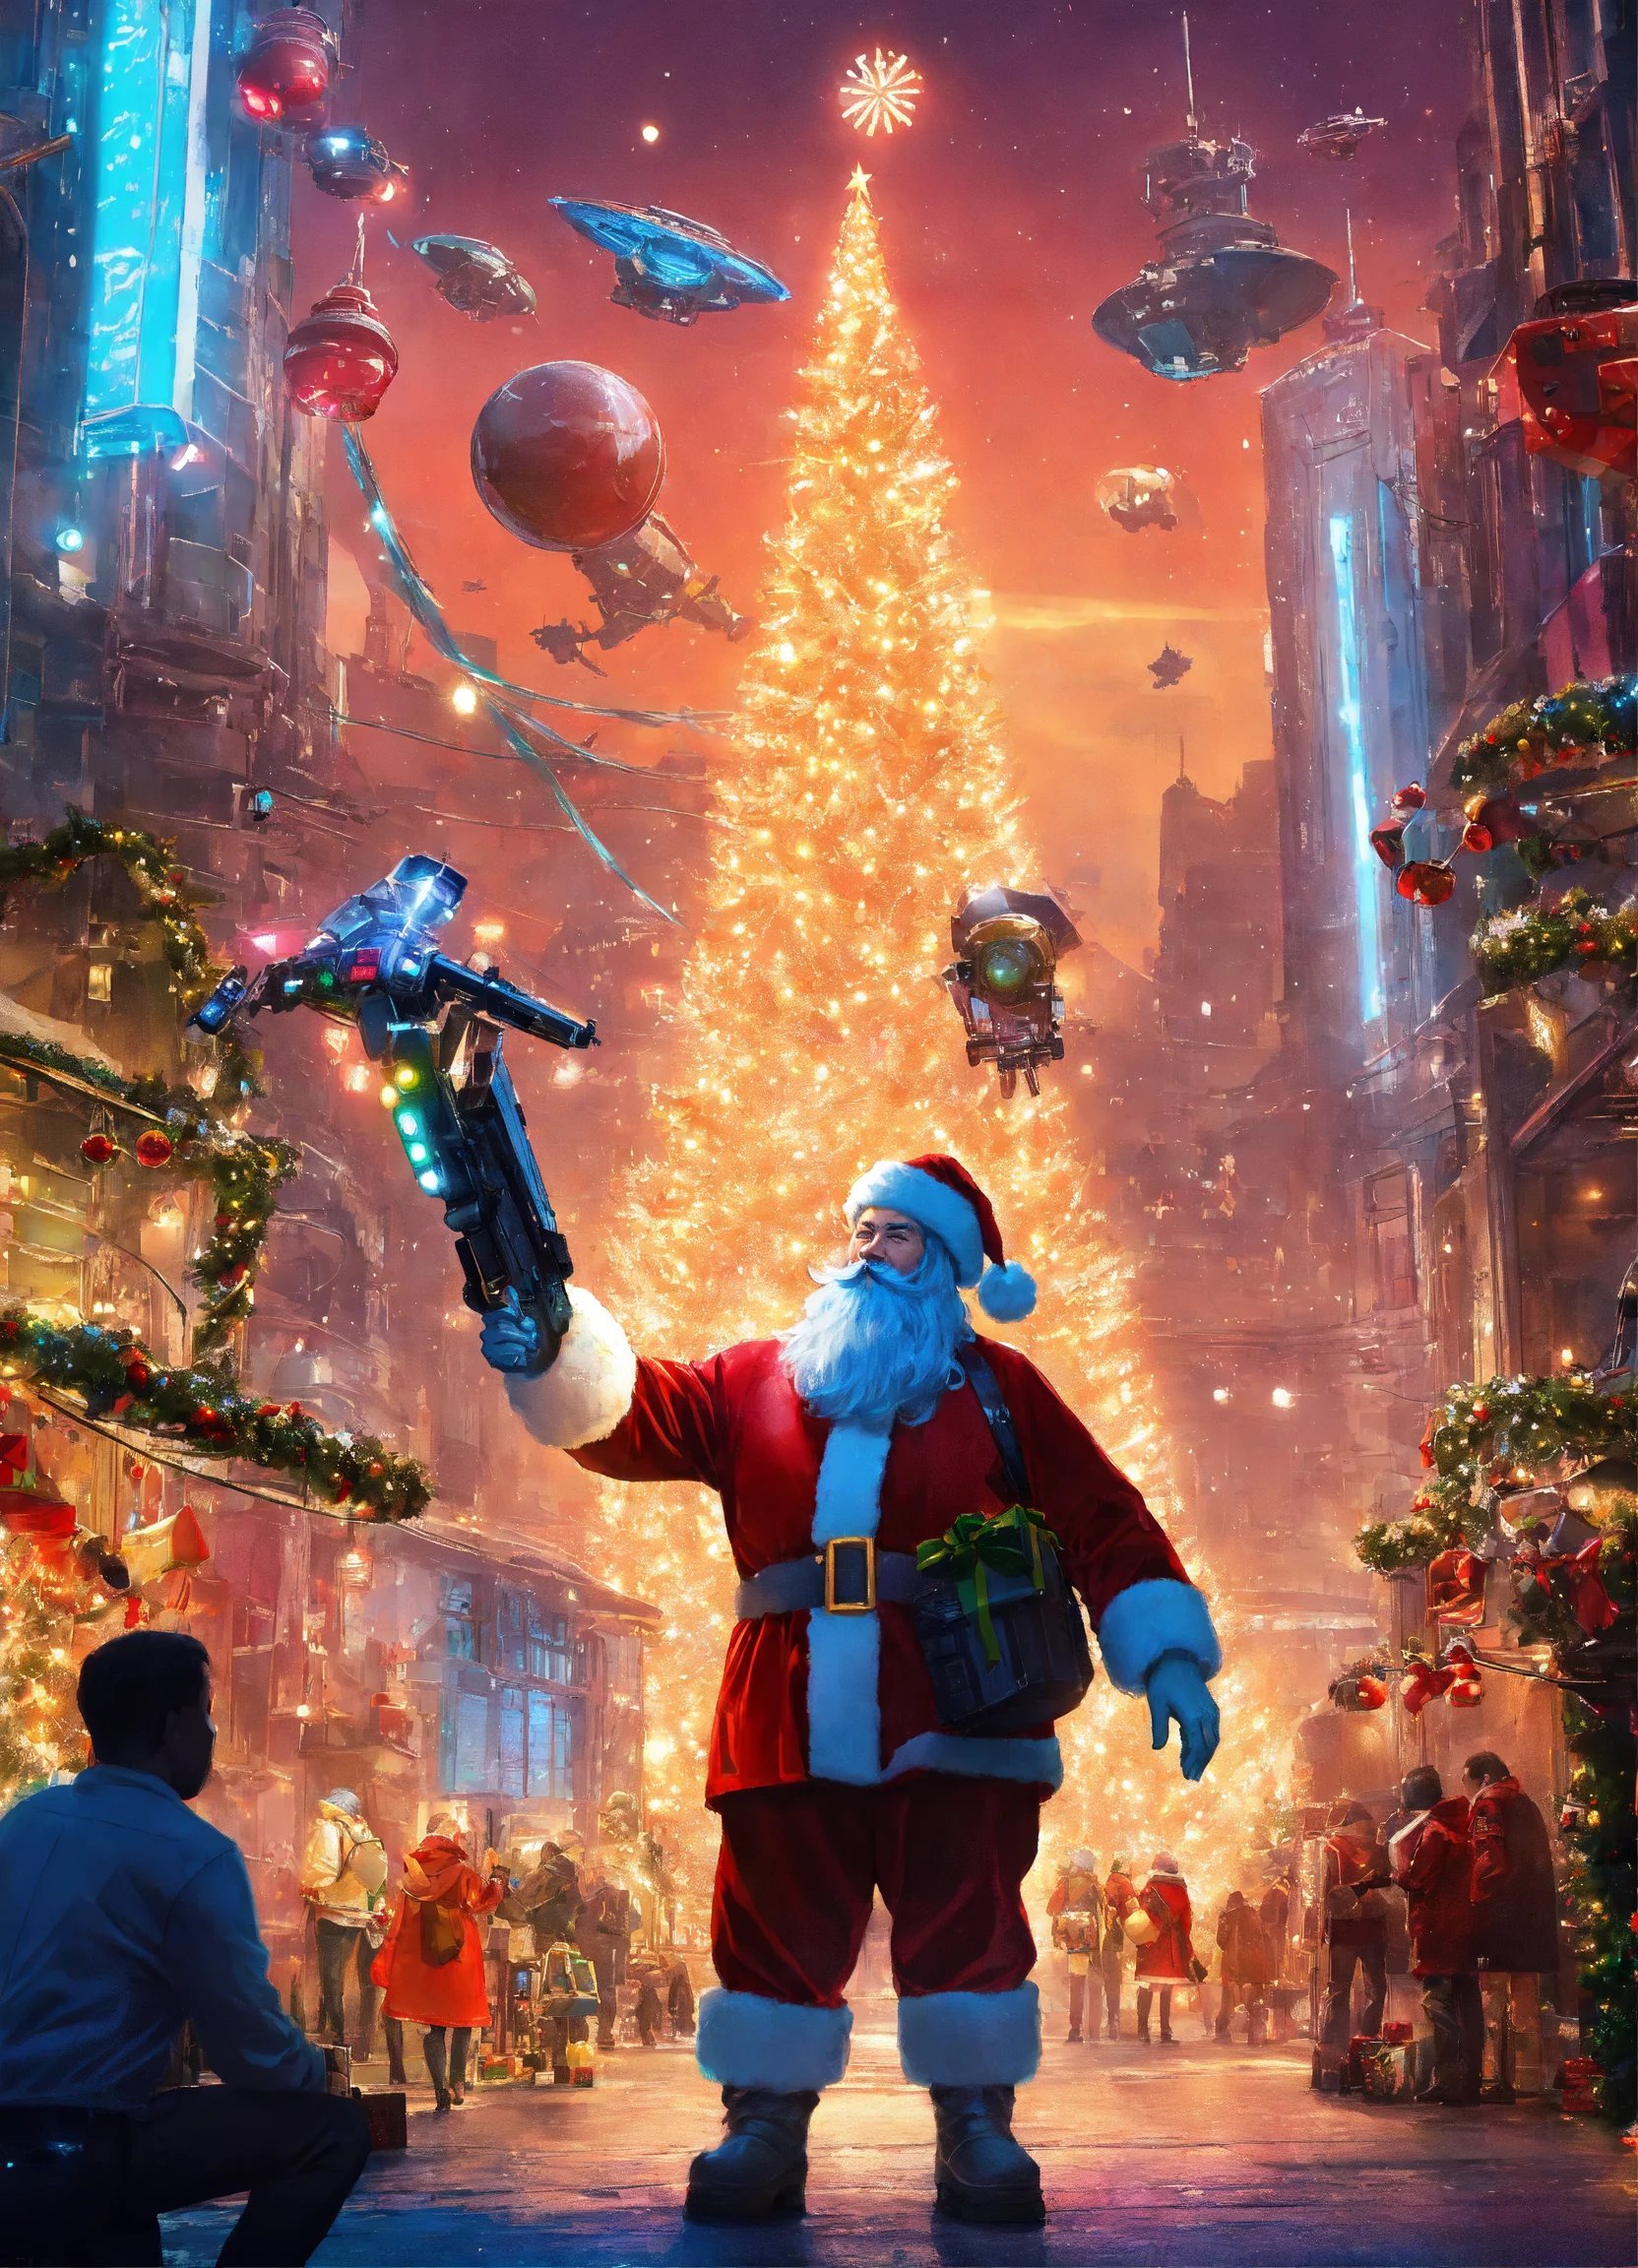 Дед Мороз в окружении дронов и летательных аппаратов с необычным устройством для выполнения желаний в руке на фоне ярко горящей огнями рождественской ели